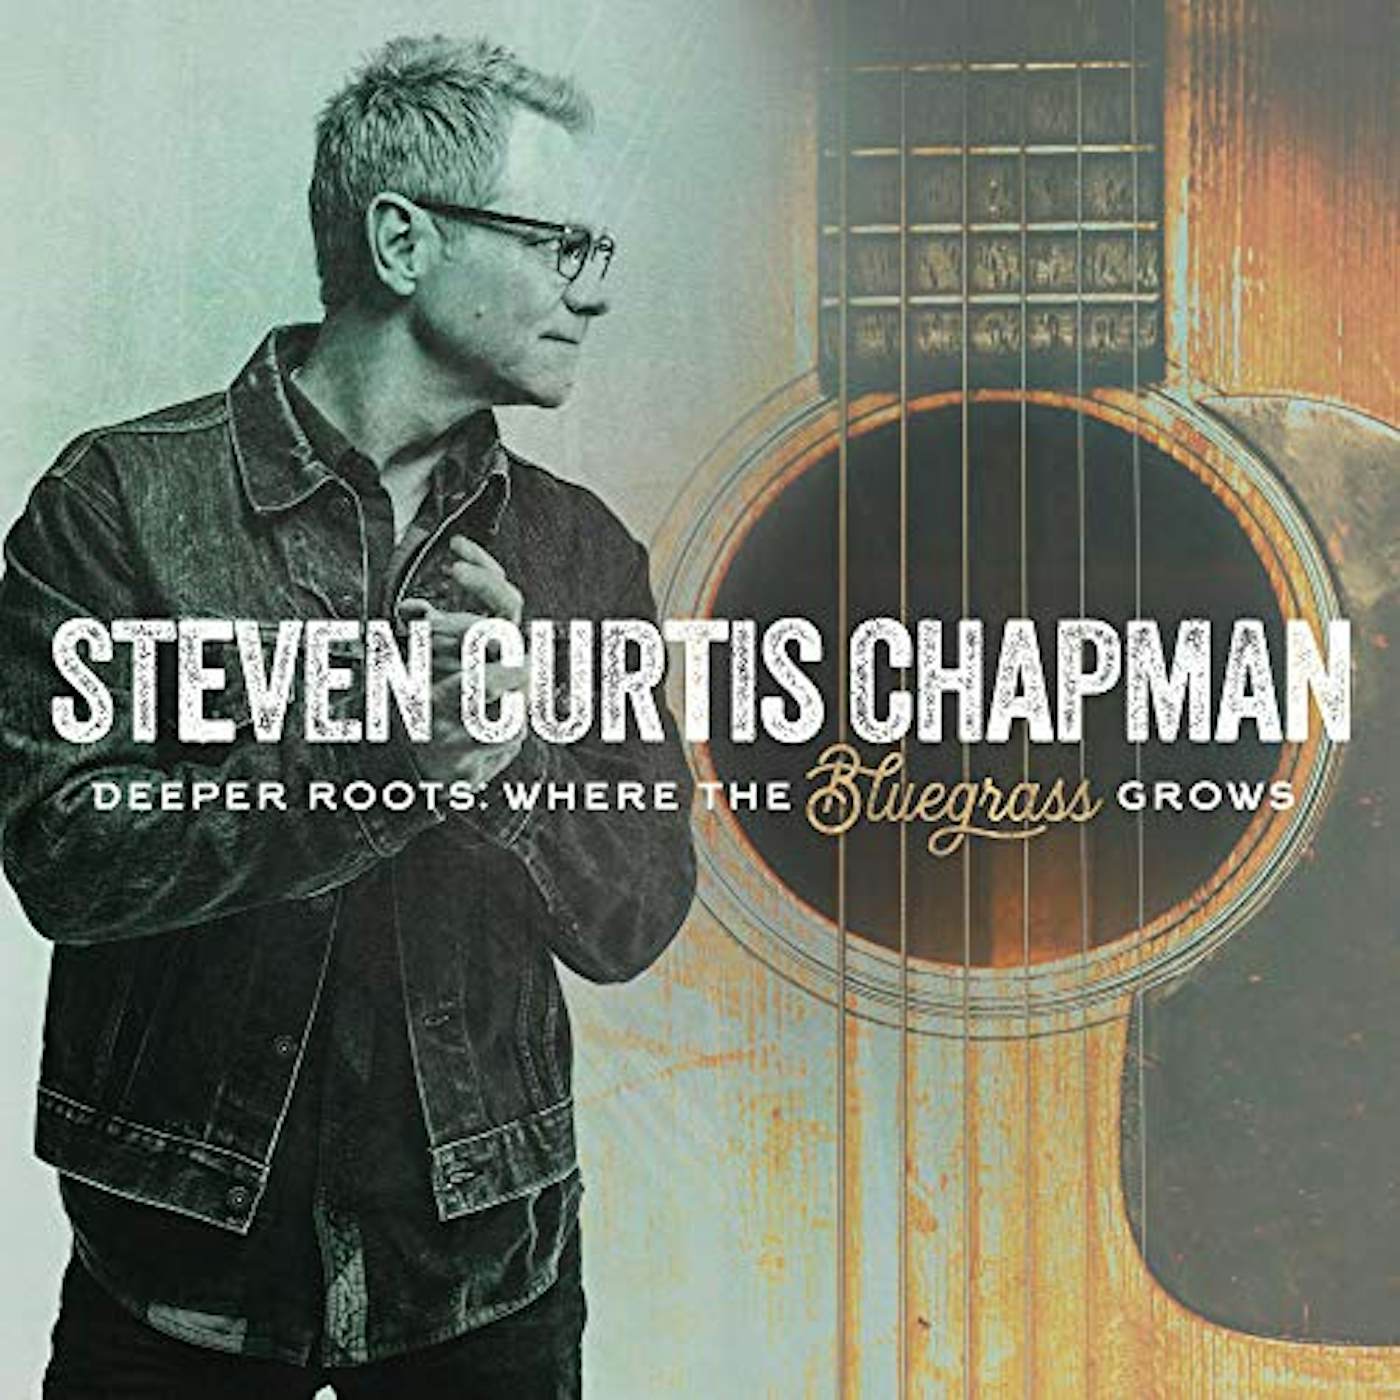 Steven Curtis Chapman Deeper Roots: Where the Bluegrass Grows Vinyl Record